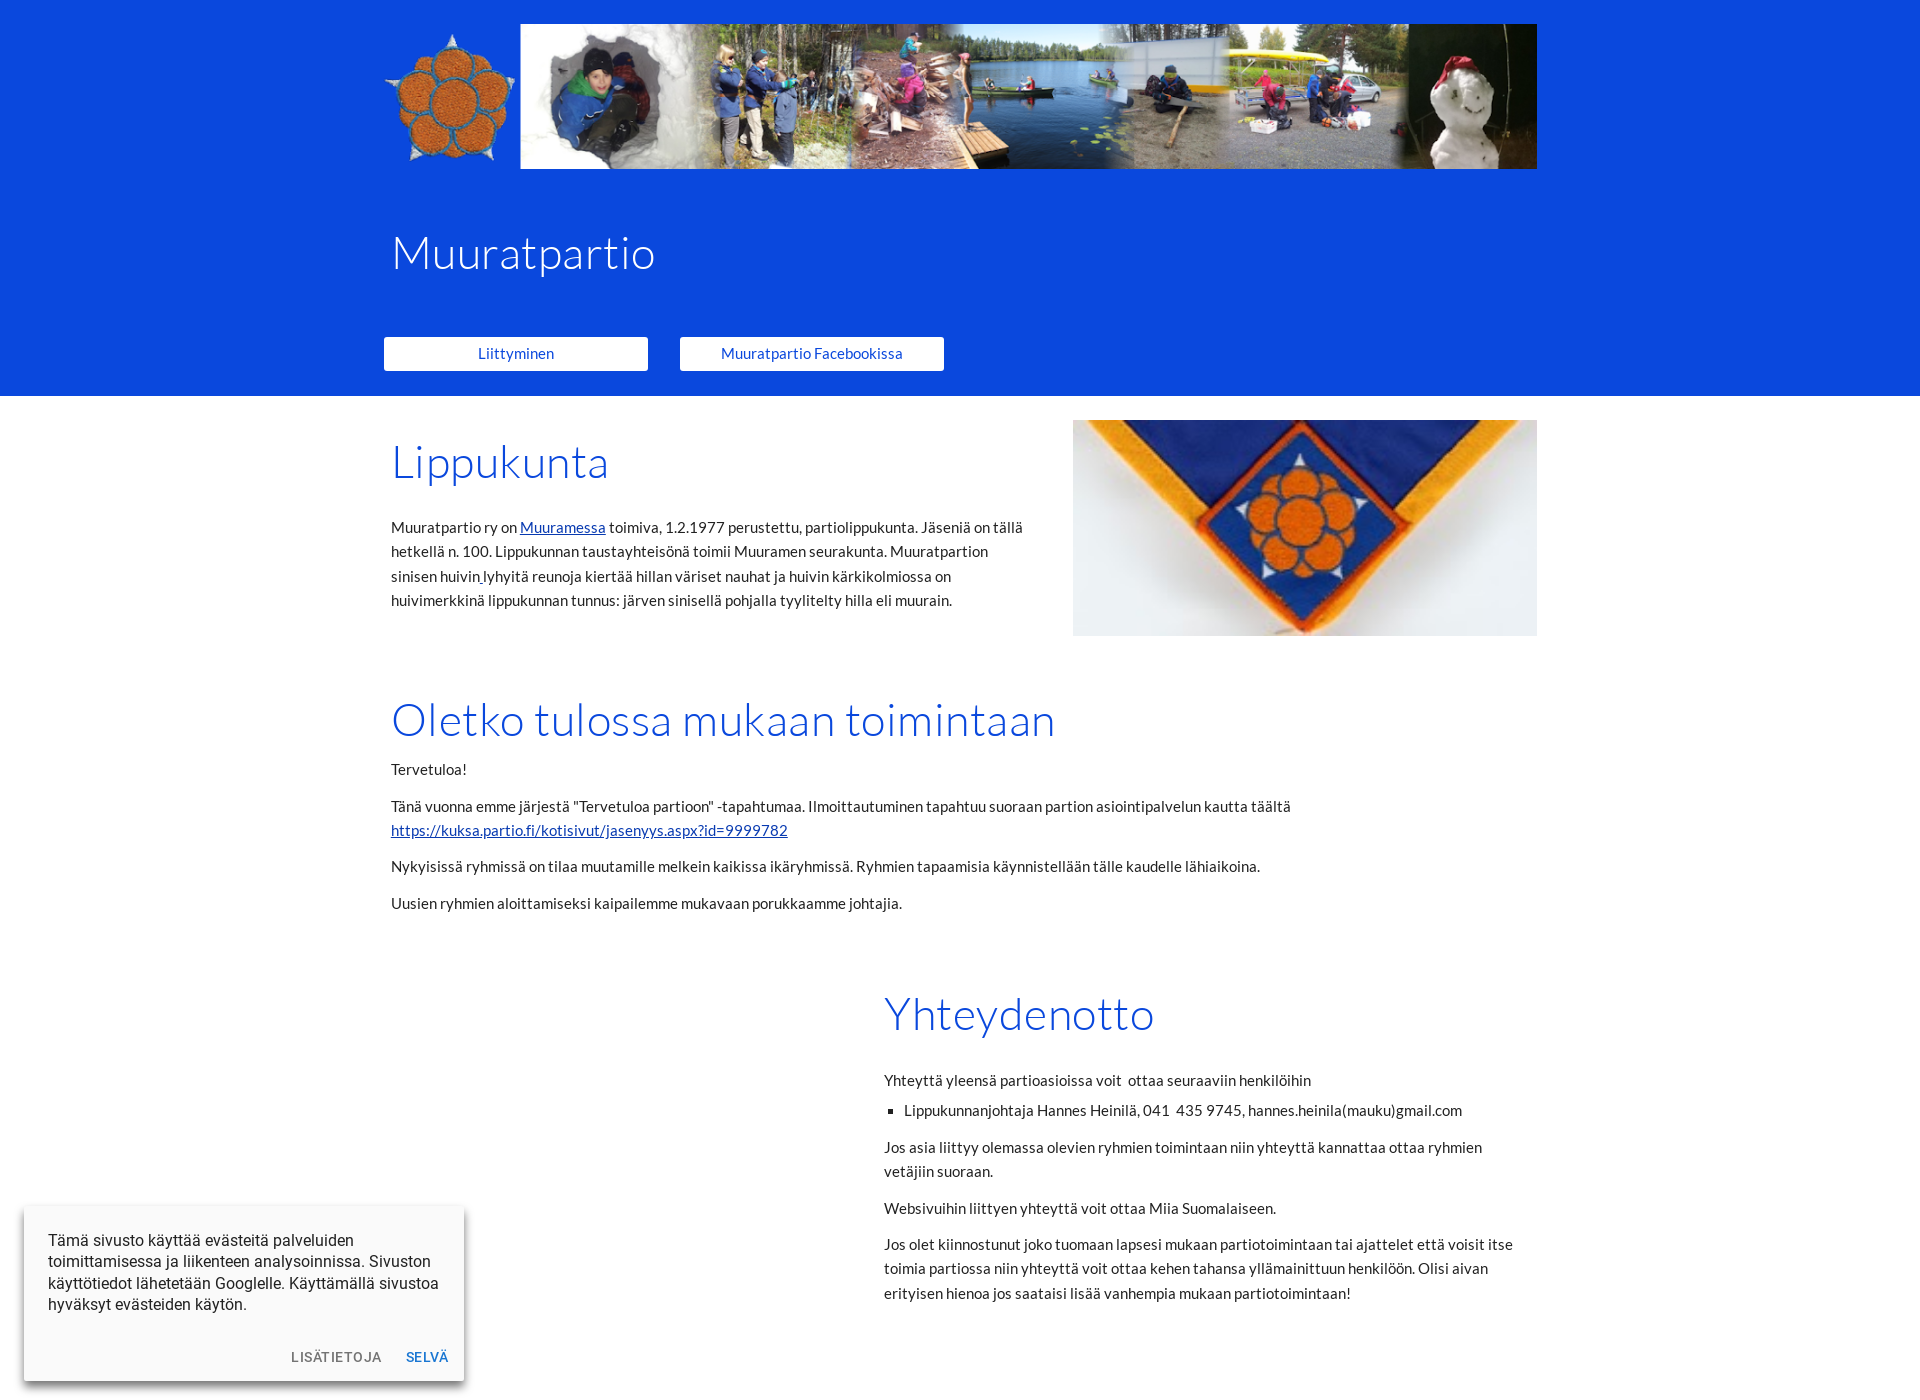 Näyttökuva muuratpartio.fi